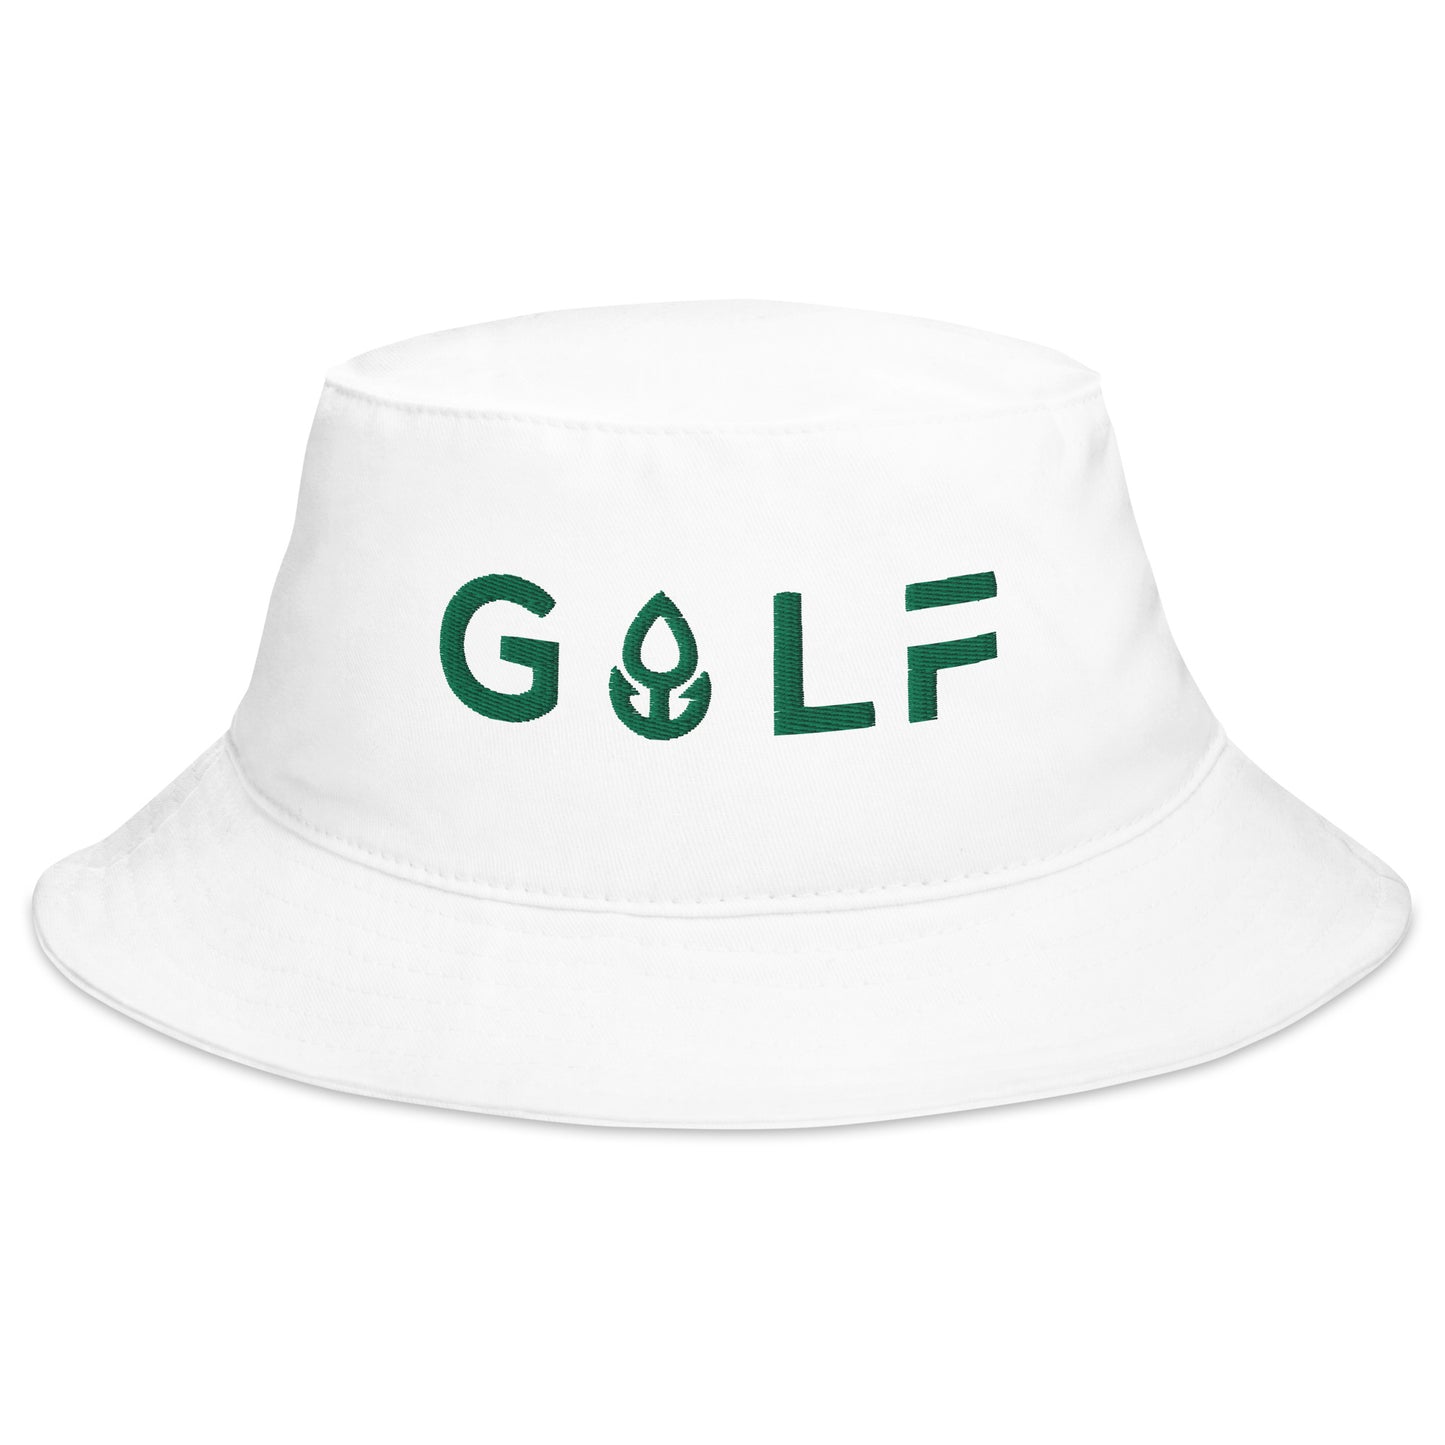 Golf v2 - Bucket Hat